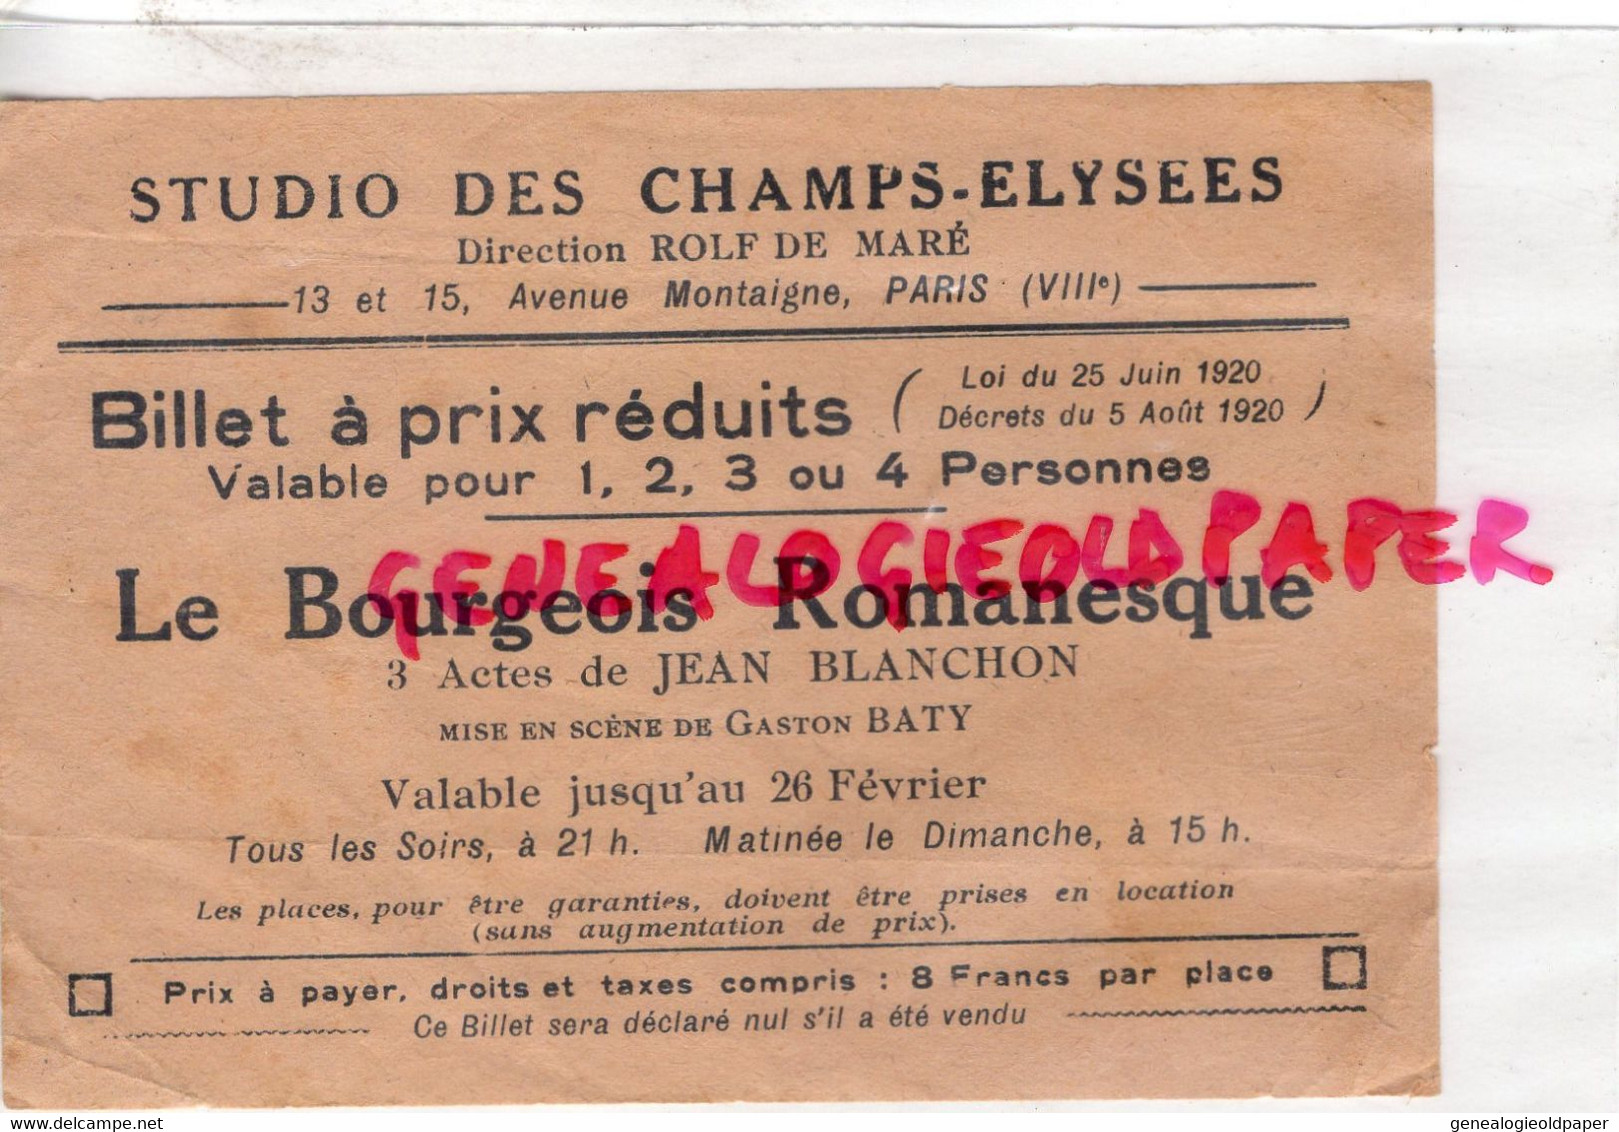 75- PARIS- STUDIO CHAMPS ELYSEES- BILLET LE BOURGEOIS ROMANESQUE-JEAN BLANCHON-GASTON BATY-1920-ROLF DE MARE-MONTAIGNE - Toegangskaarten